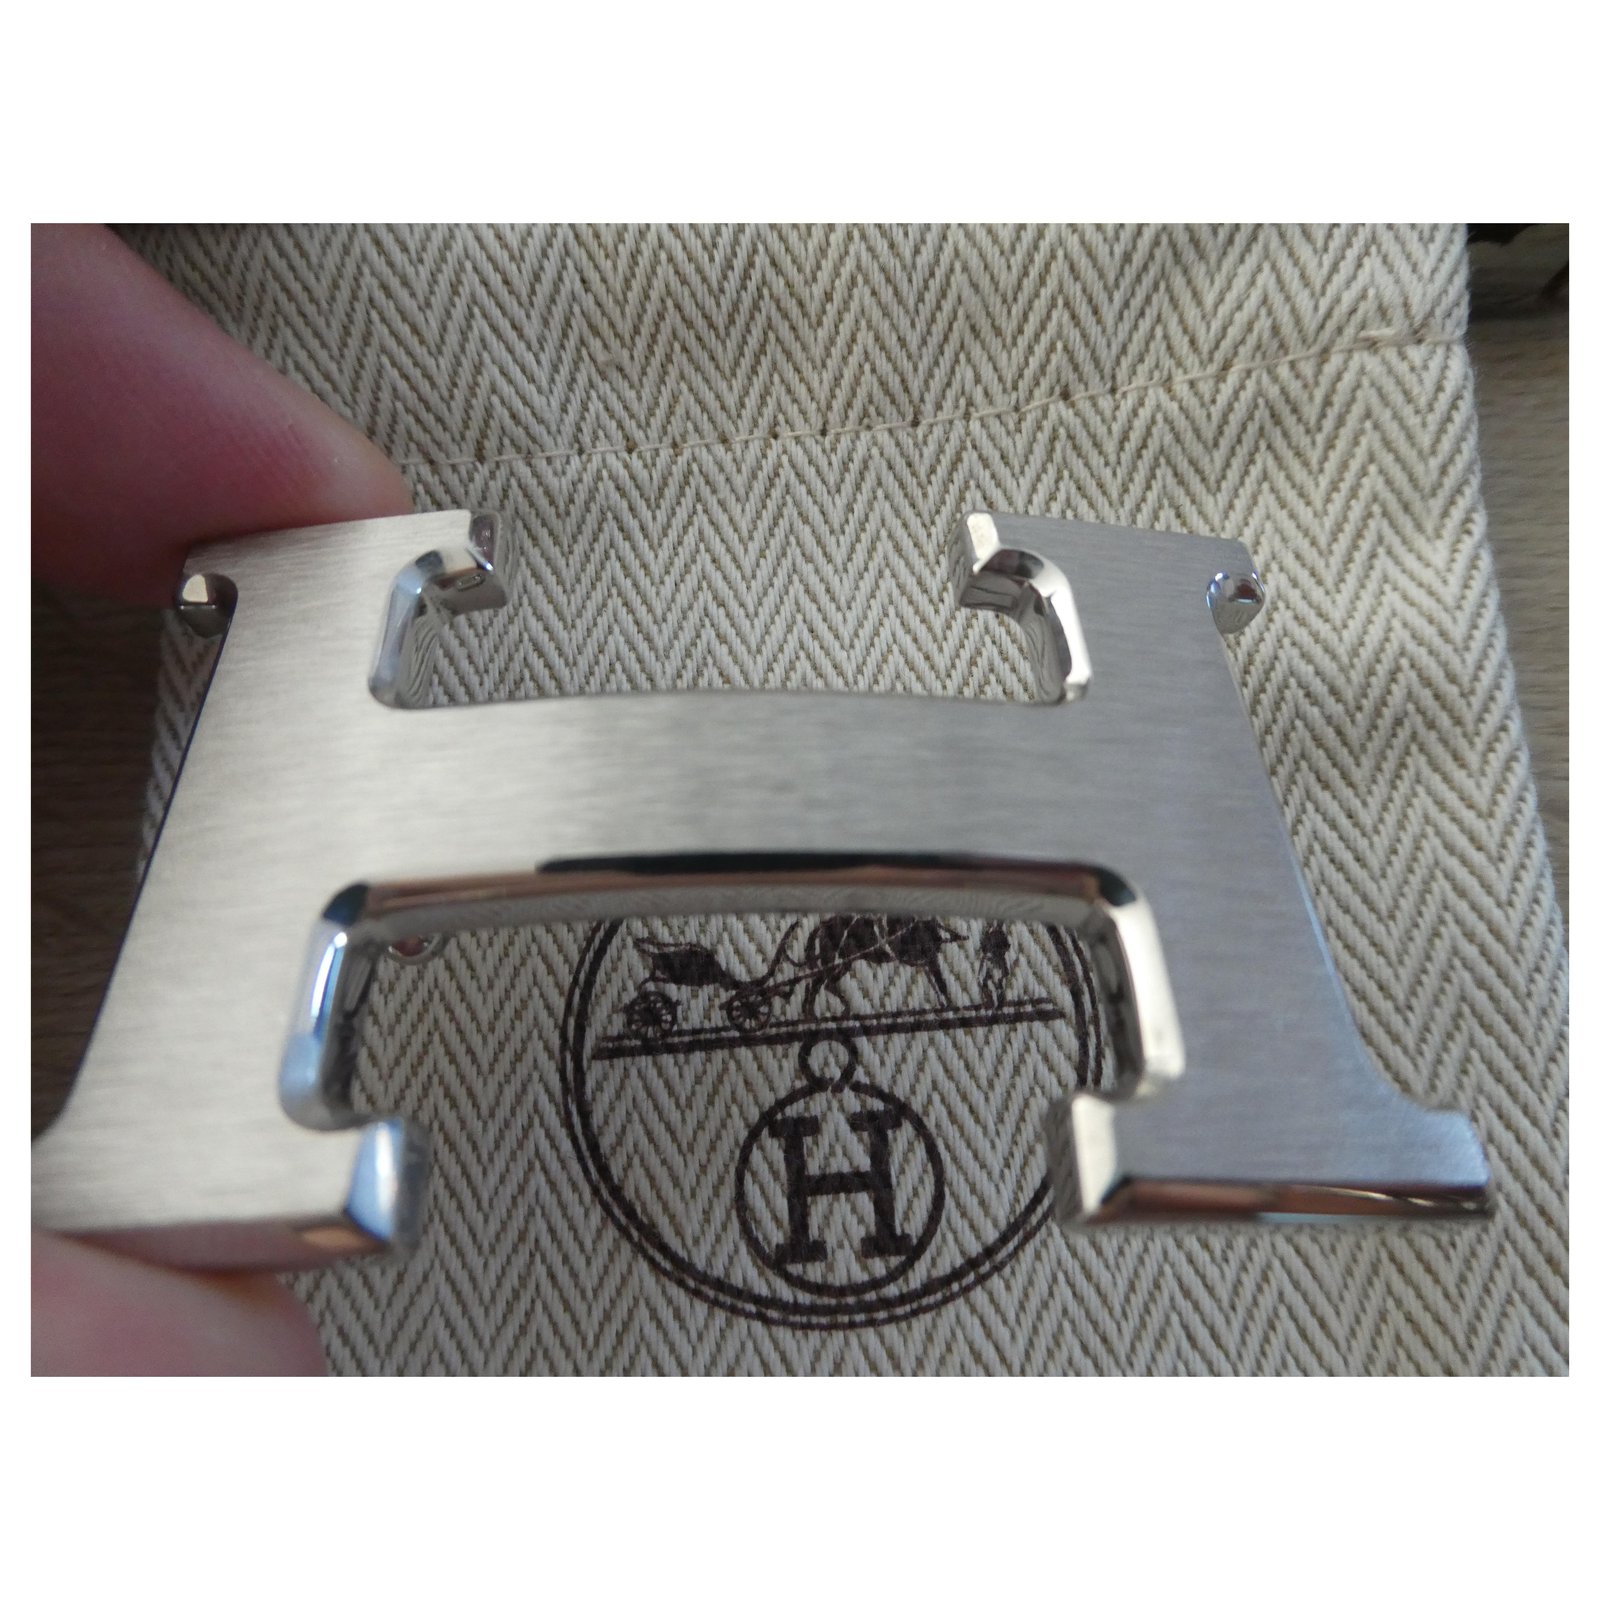 Hermès belt buckle model 5382 brushed silver steel 32MM Silvery